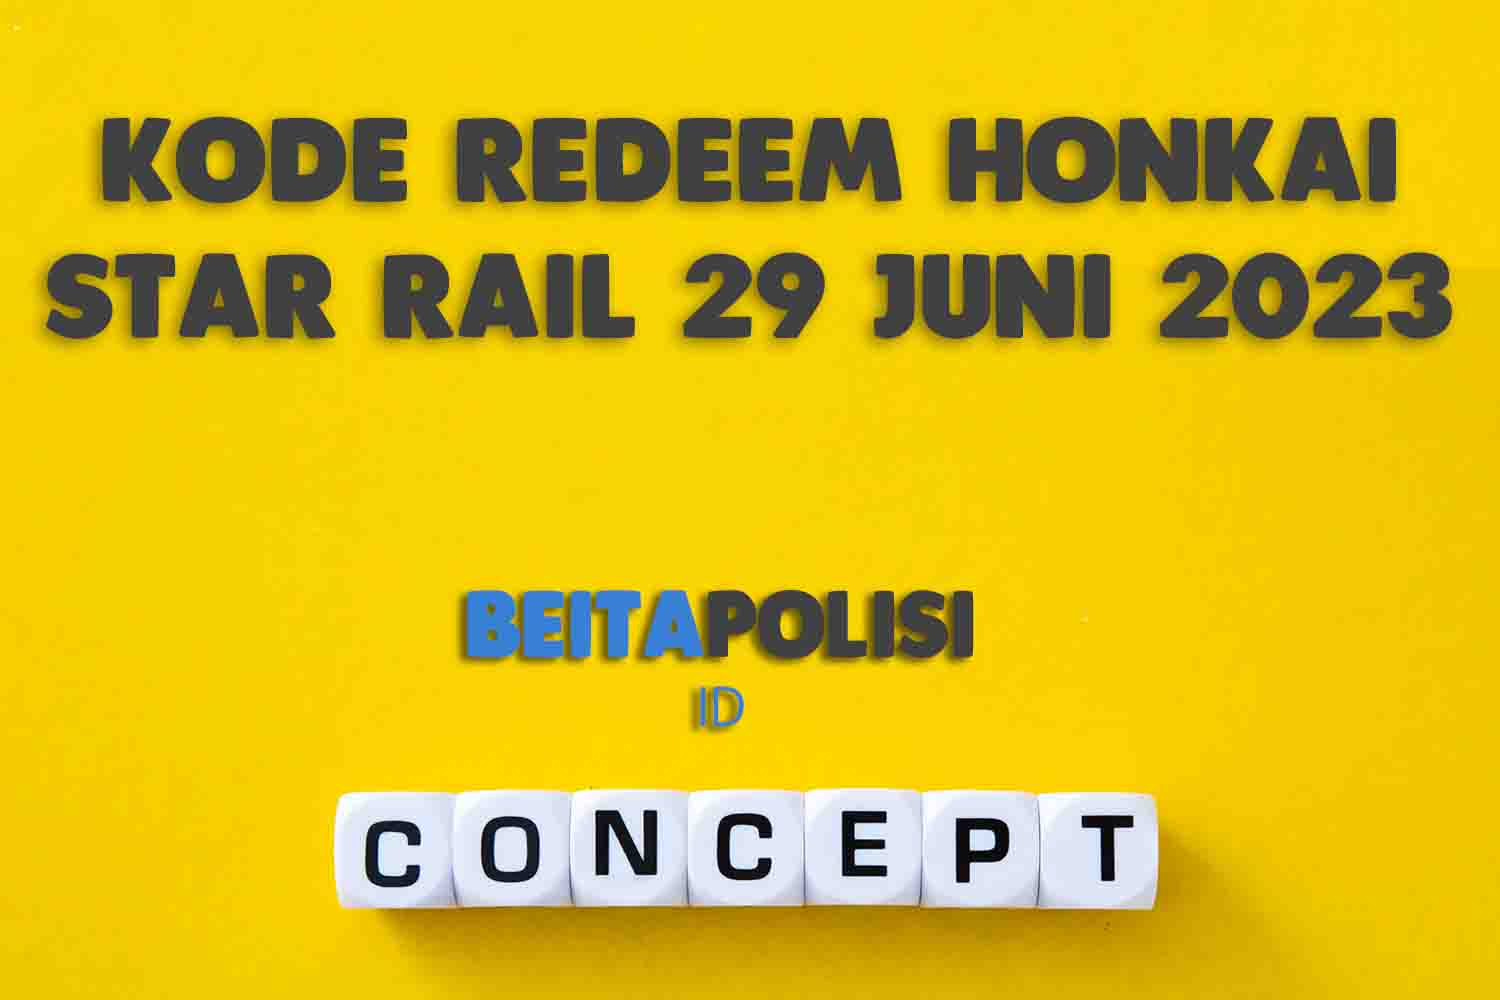 Kode Redeem Honkai Star Rail 29 Juni 2023 Terbaru